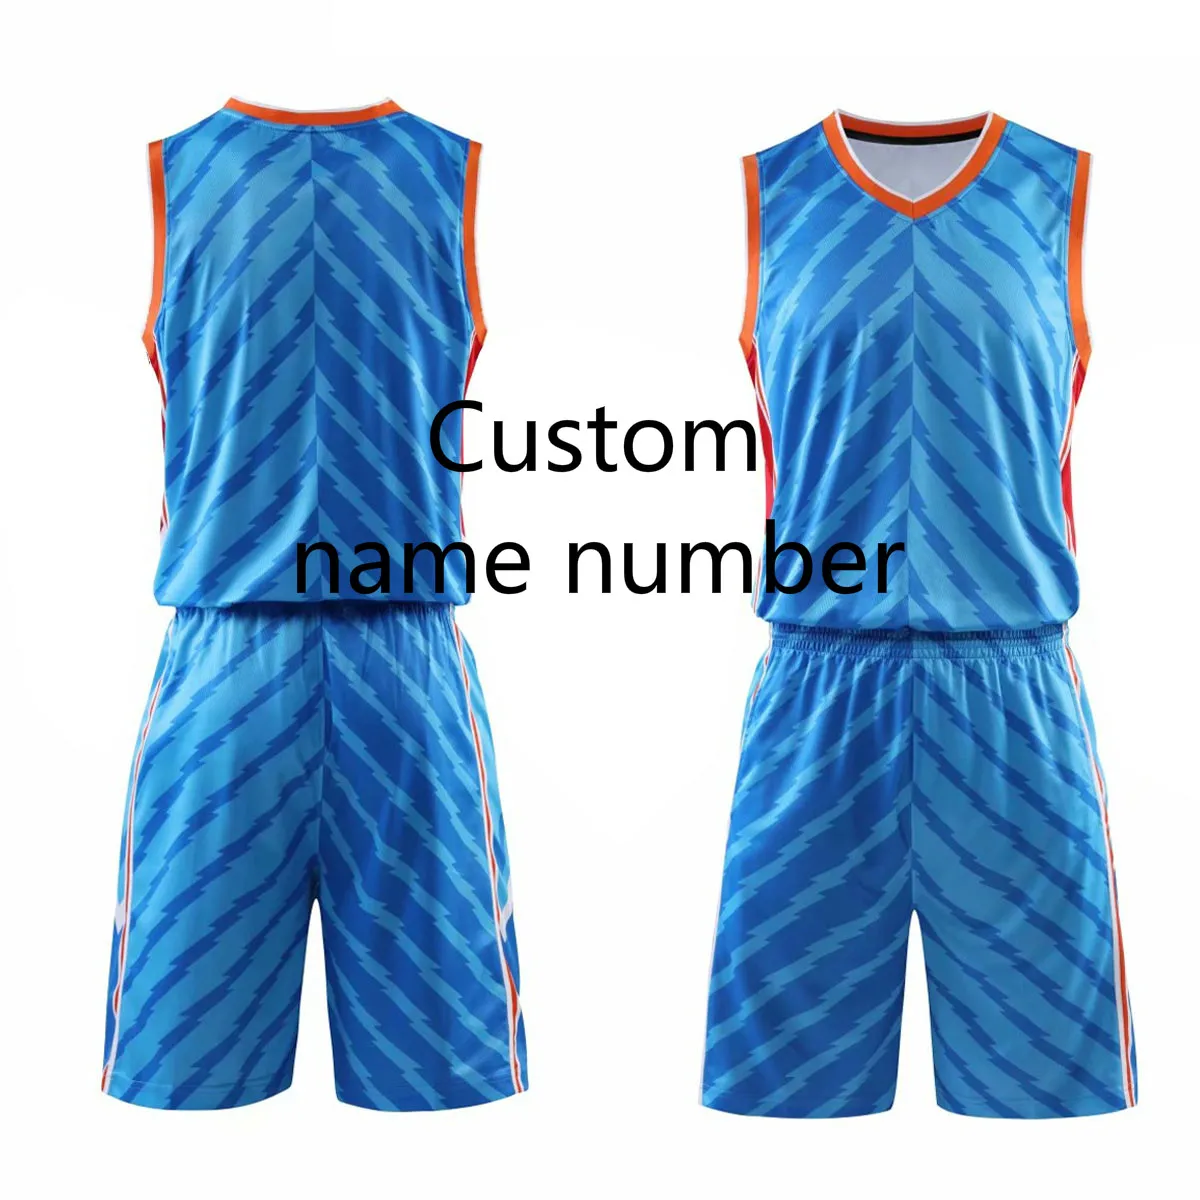 Быстросохнущие мужские баскетбольные майки, Молодежная форма для баскетбола, на заказ, спортивная одежда, костюм, майки, шорты, плюс размер - Цвет: Custom name number